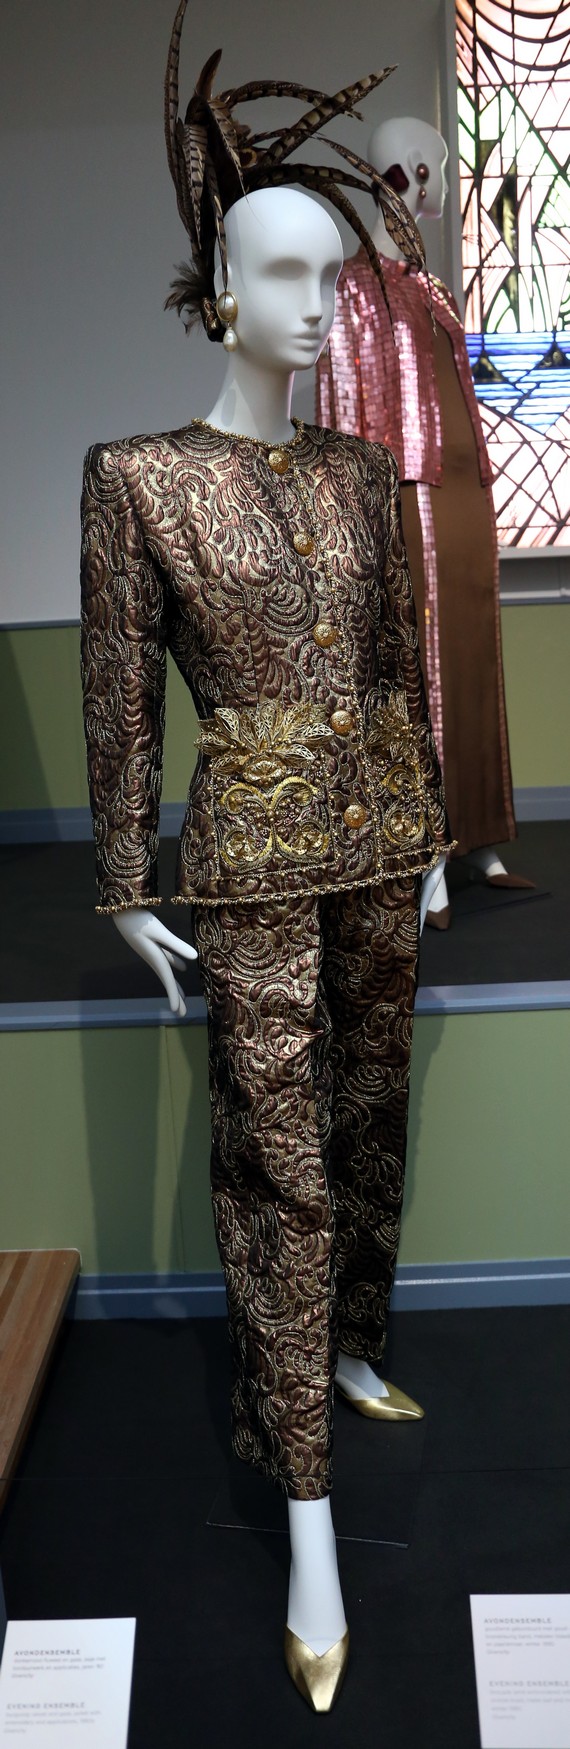 Móda 90. let - večerní oblek Givency, 1990